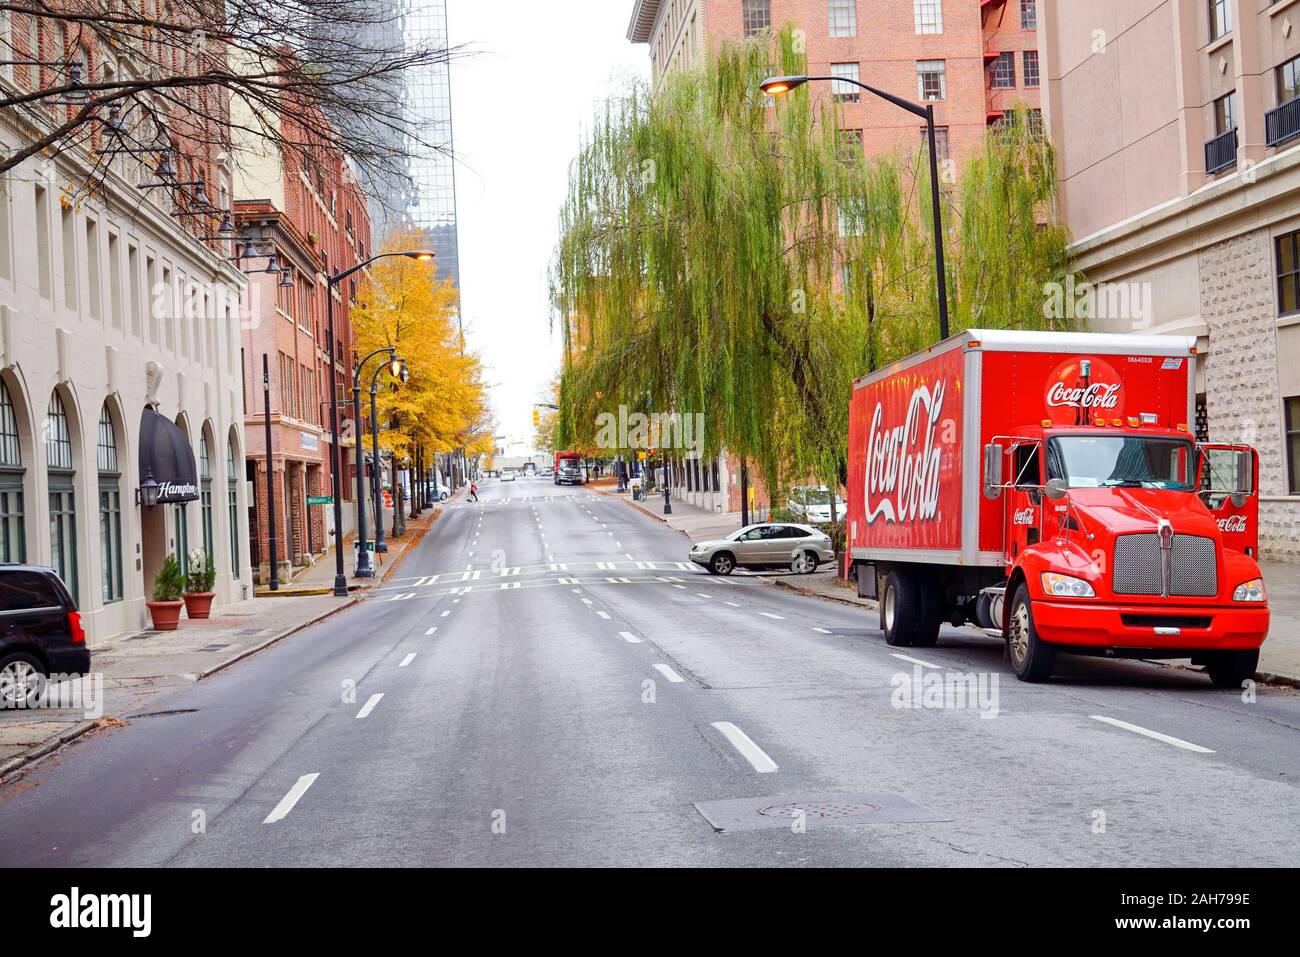 ATLANTA, GA, USA - Décembre 04 : Le Monde de Coca-Cola à Pemberton Place est un musée consacré à l'histoire de Coca-Cola, une célèbre boisson gazeuse Banque D'Images